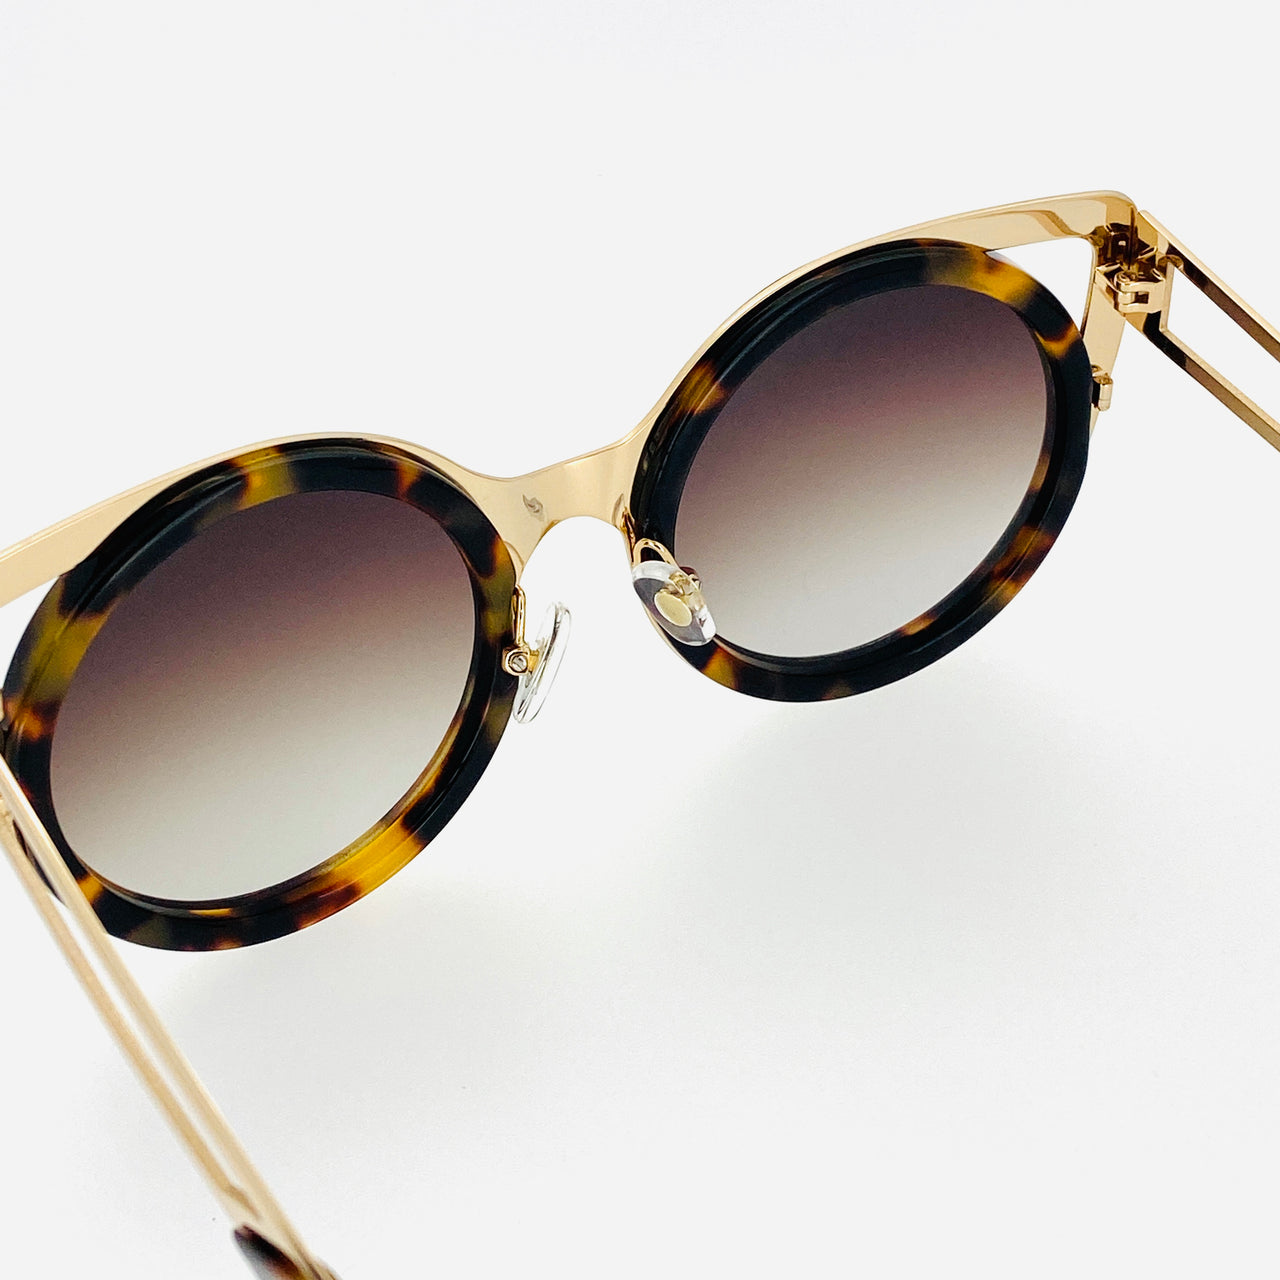 Erdem Sunglasses Cat Eye Tortoise Shell Gold and Brown